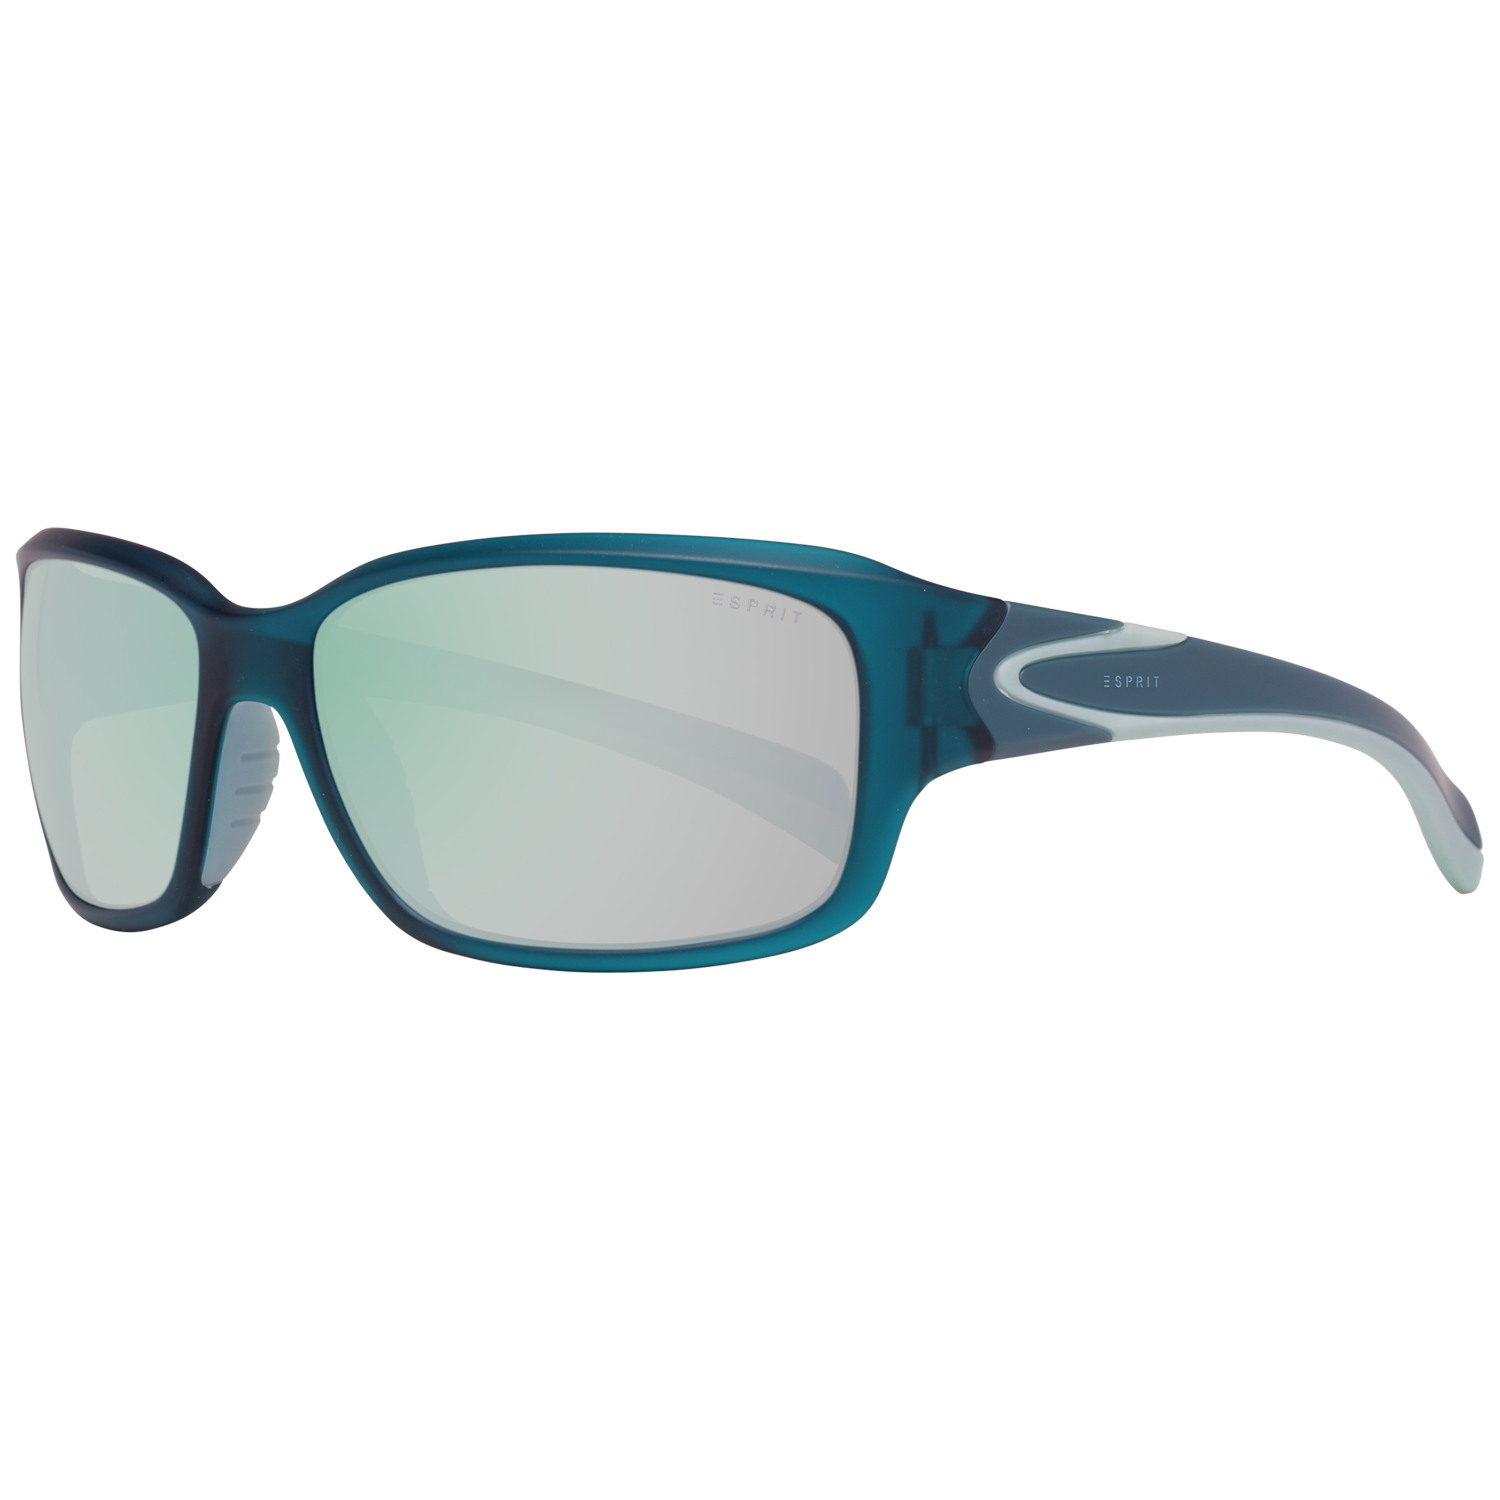 Esprit Sunglasses ET19597 543 60 Turquoise